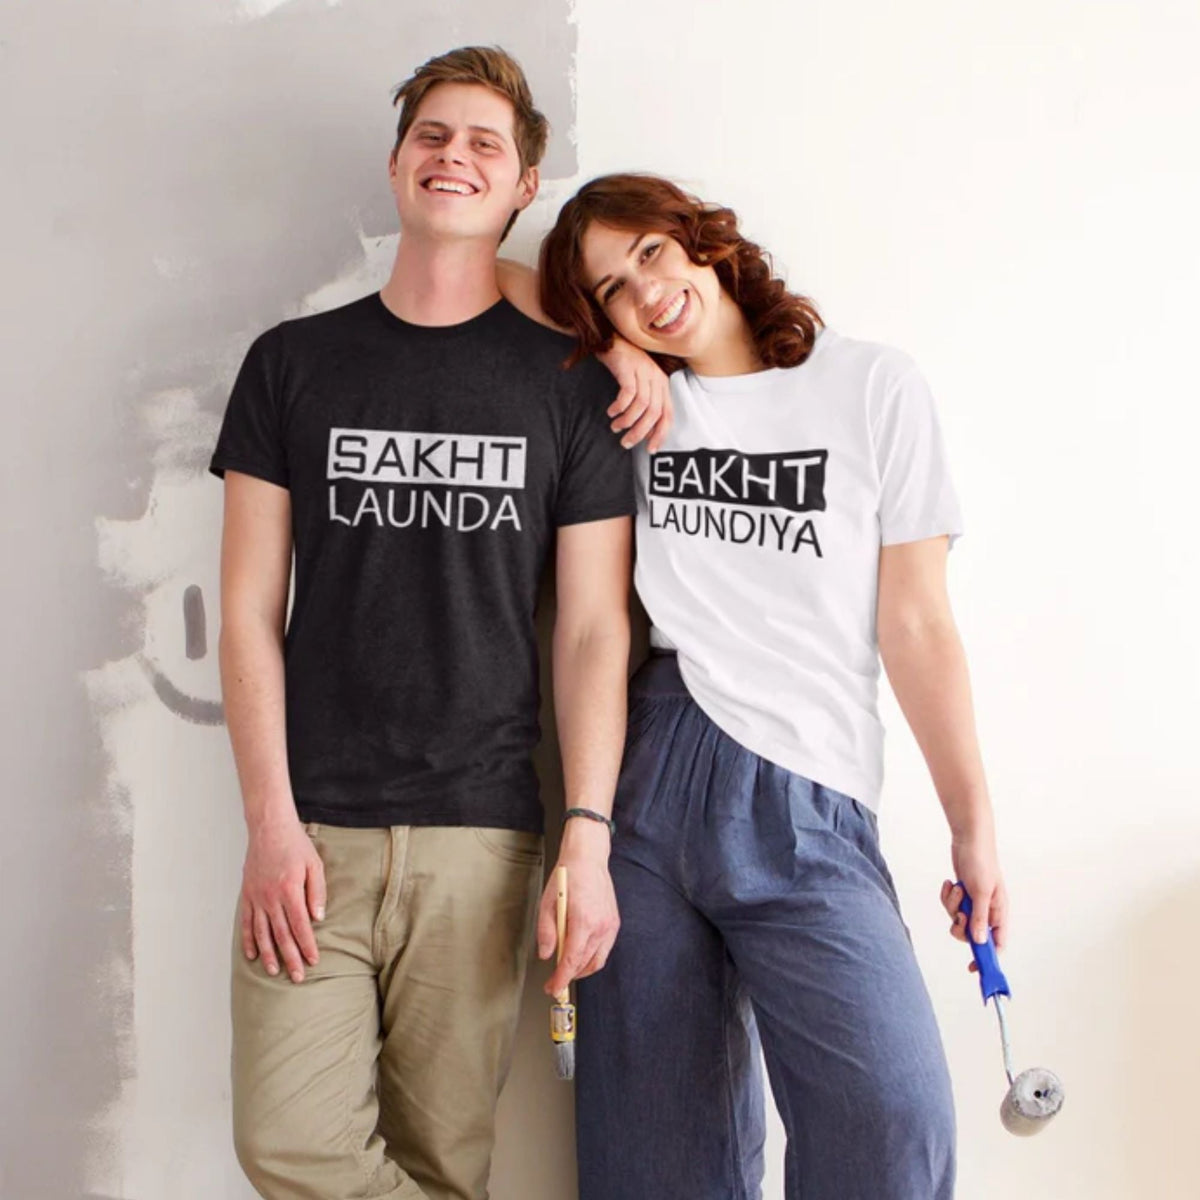 sakht-launda-sakth-laundiya-black-and-white-cotton-printed-couple-t-shirt